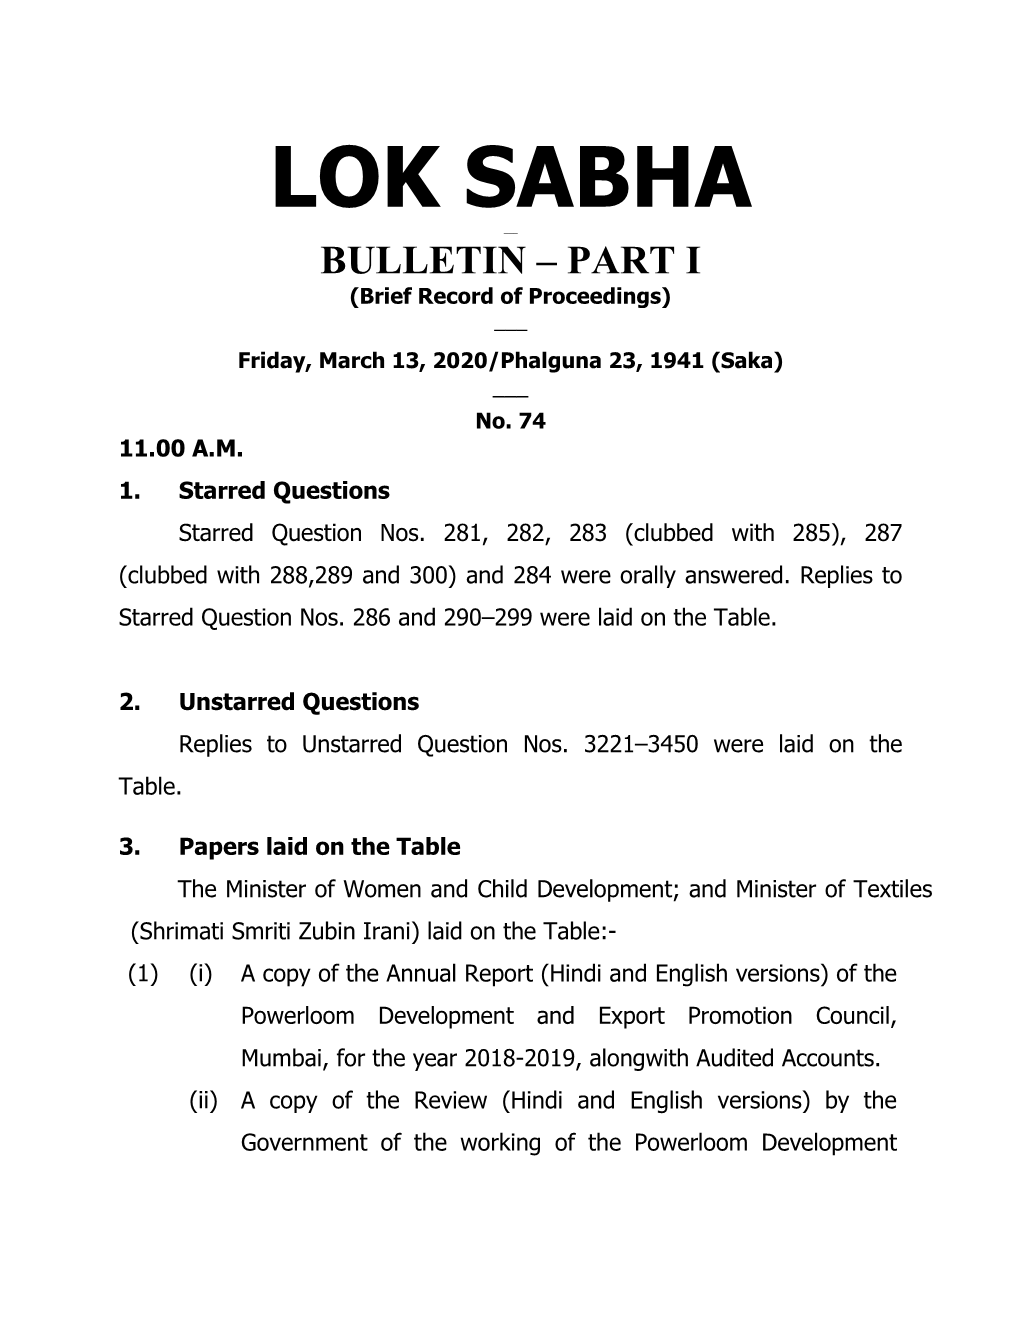 Lok Sabha Secretariat